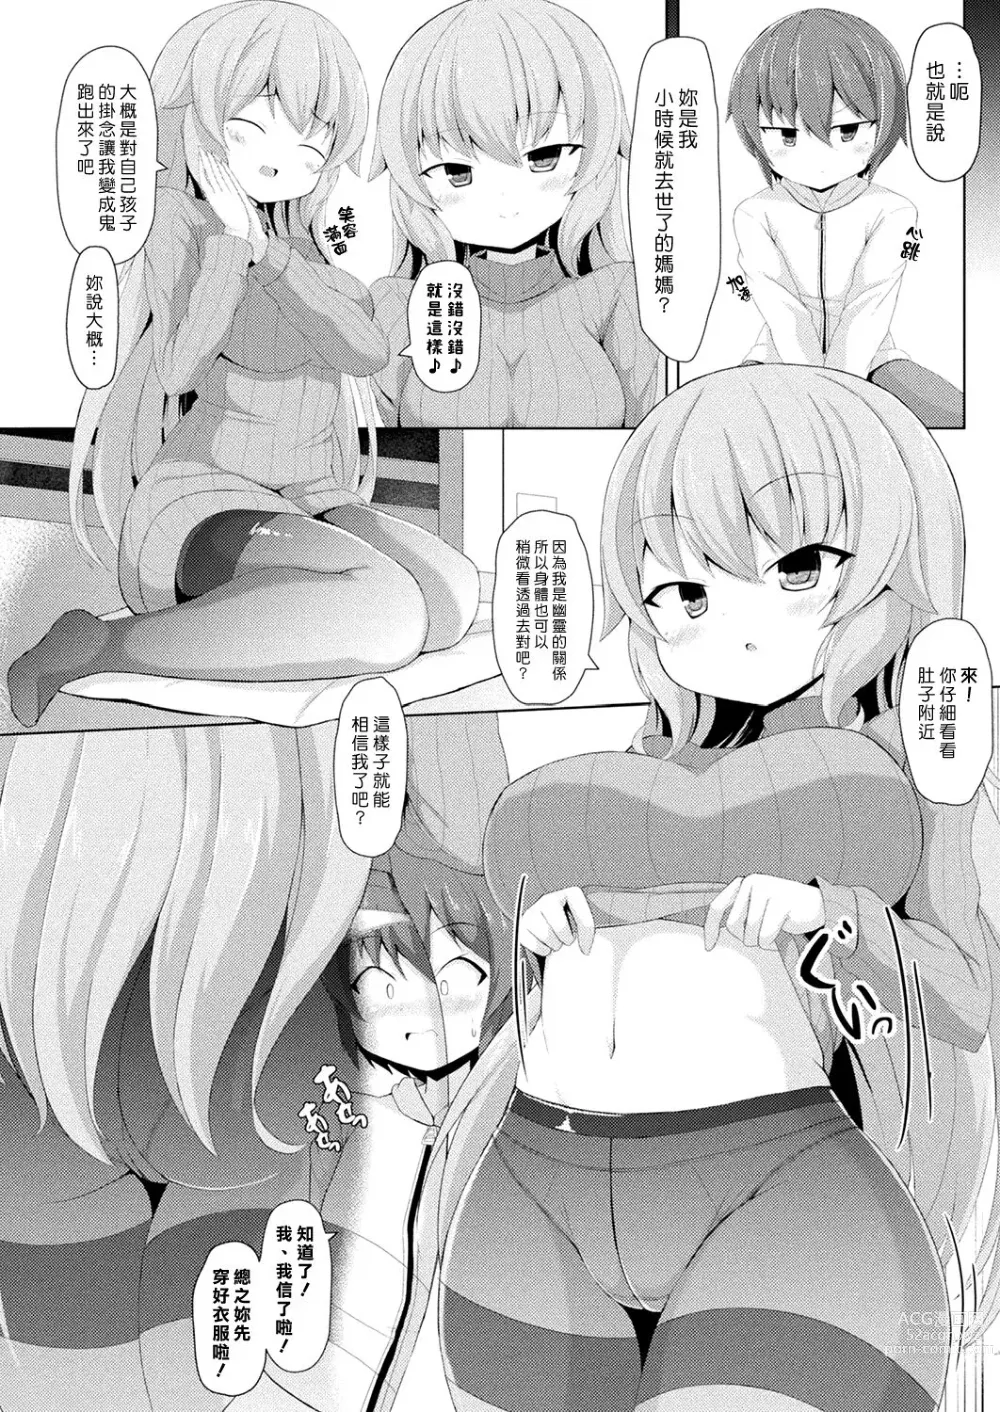 Page 2 of manga 媽媽什麼都看透囉